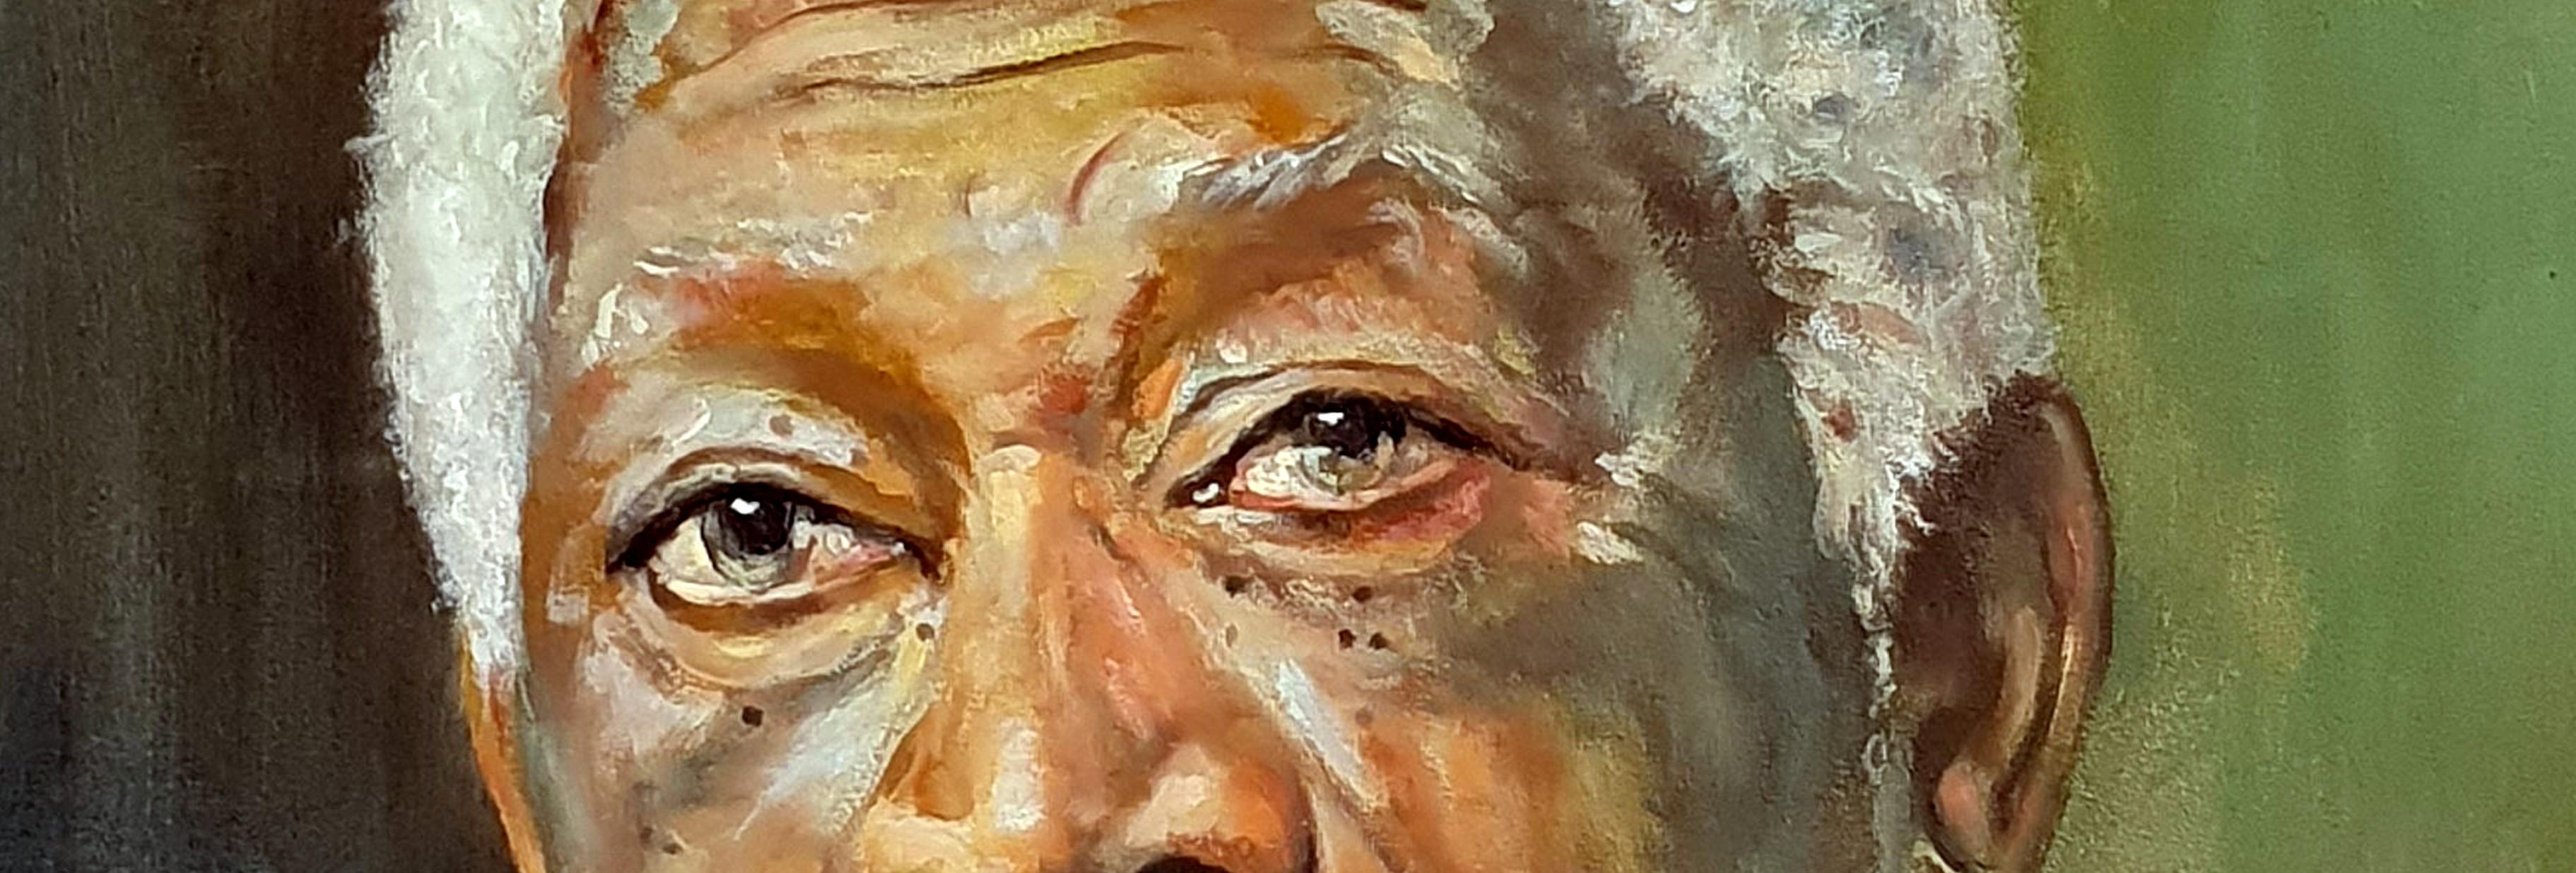 Carisma (Morgan Freeman) - Painting by José Luis Pagador Ponce